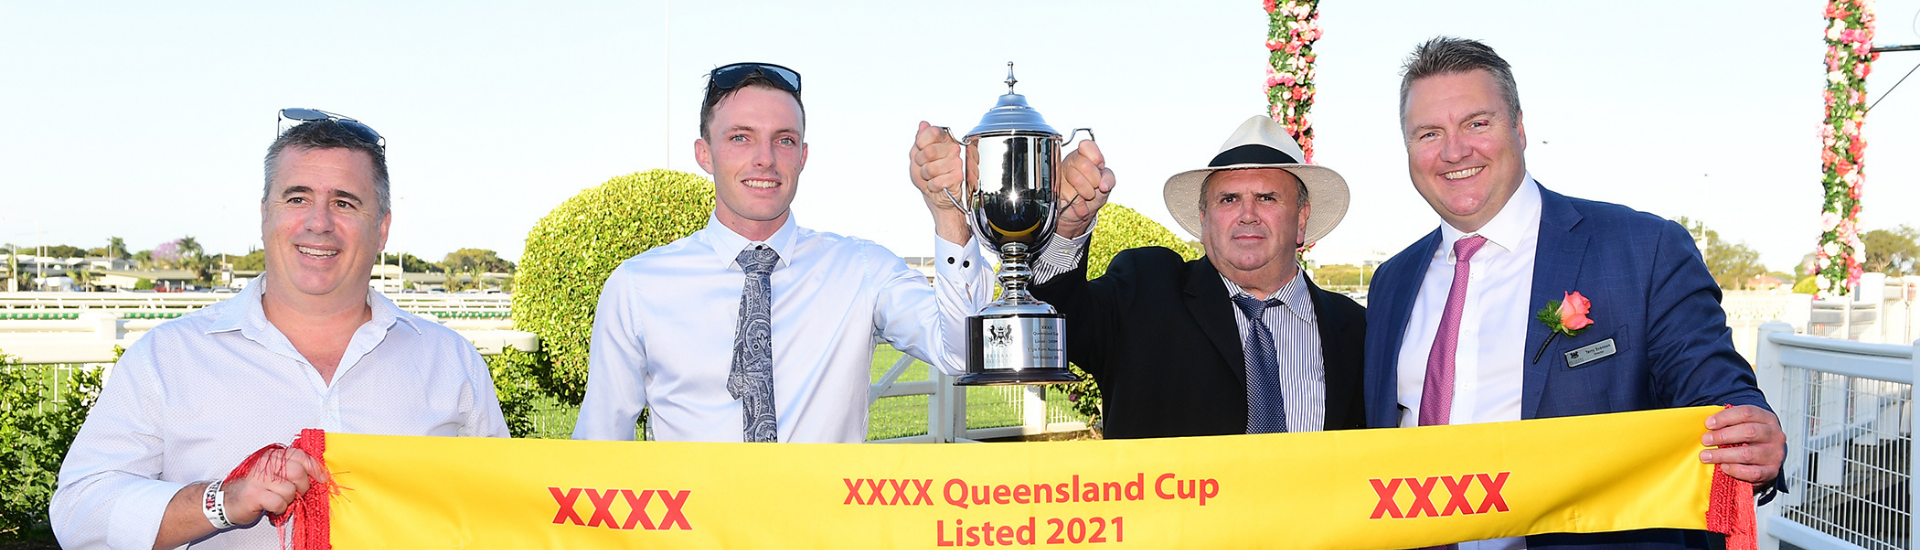 XXXX Qld Cup Web Banner | Brisbane Racing Club